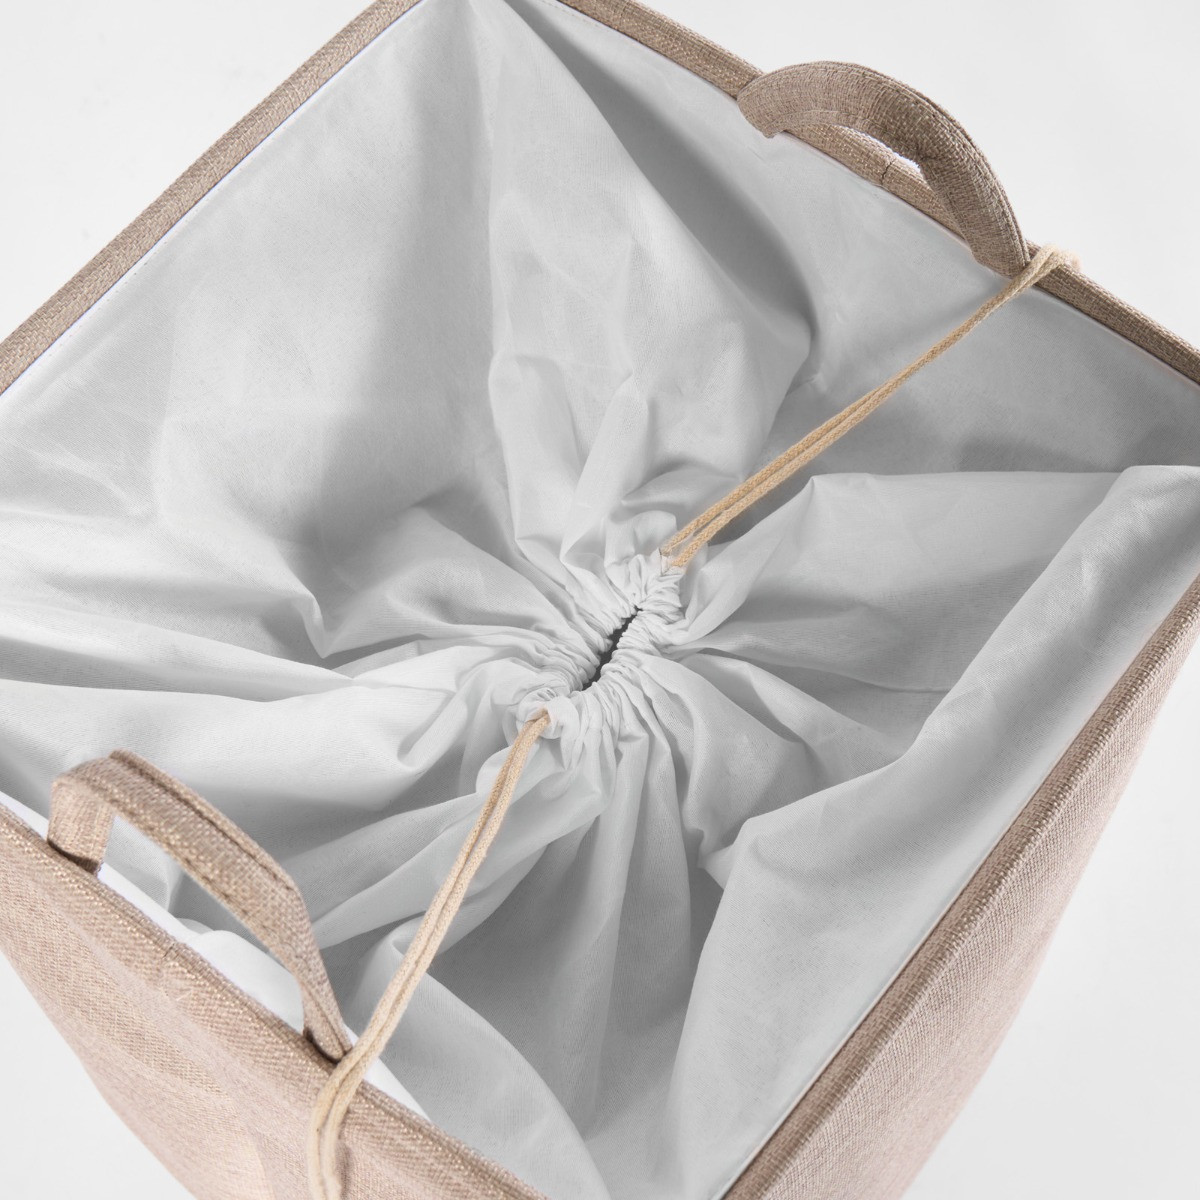 OHS Faux Linen Laundry Bag - Natural>